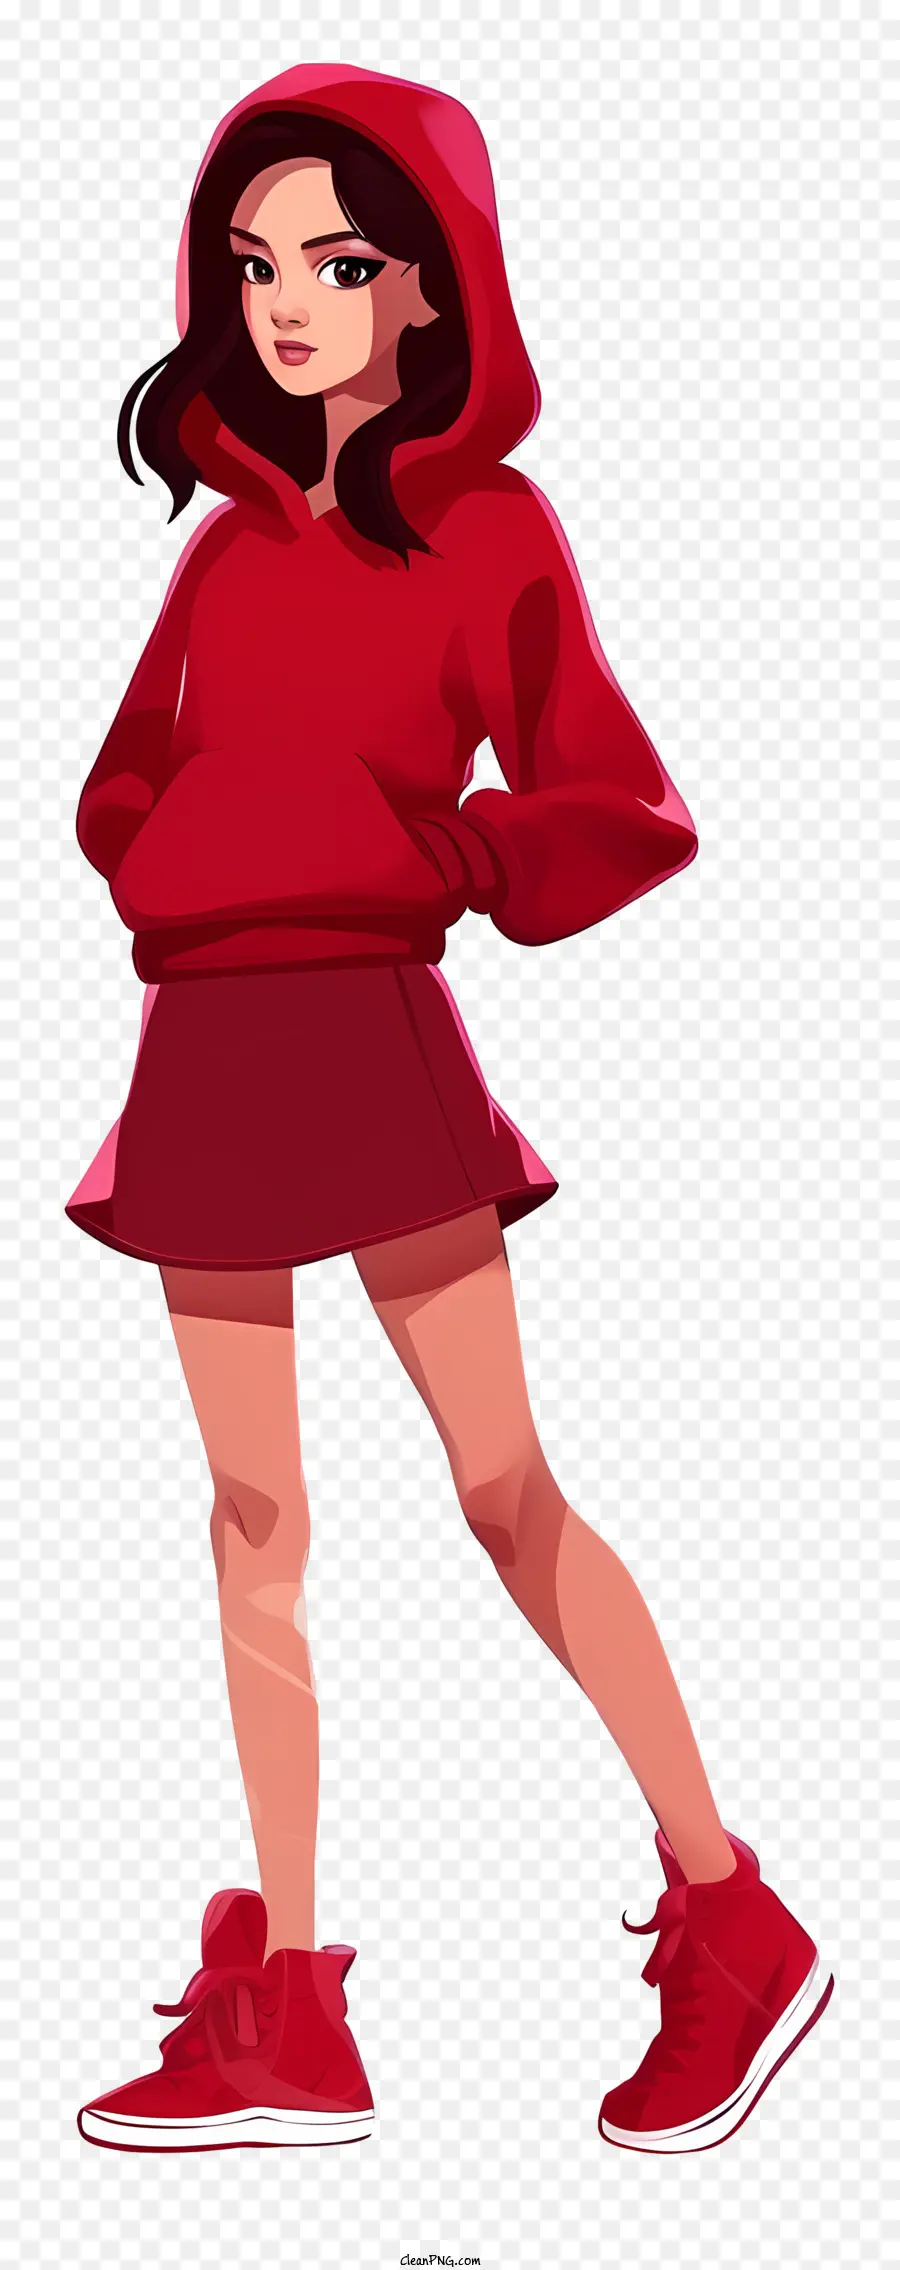 Cartoon tragen rote Tag Frau Red Hoodie Red Sneakers Arme verschränkt - Frau, die roten Hoodie und Turnschuhe trägt, lächelt